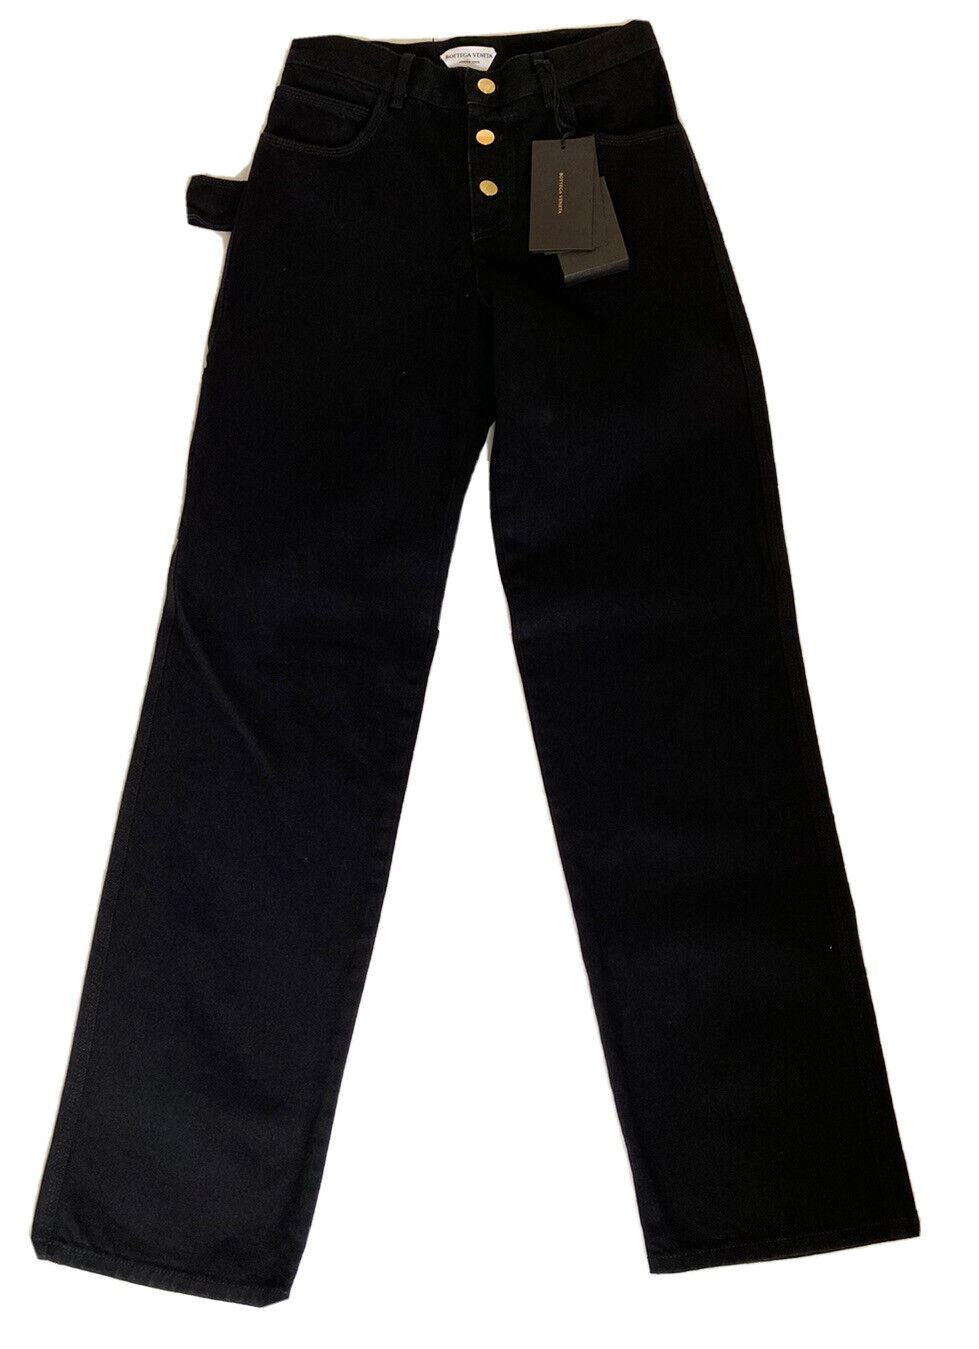 Neu mit Etikett: 950 $ Bottega Veneta High-Waist-Jeans Schwarz 0 US (36 Euro) 618452 Italien